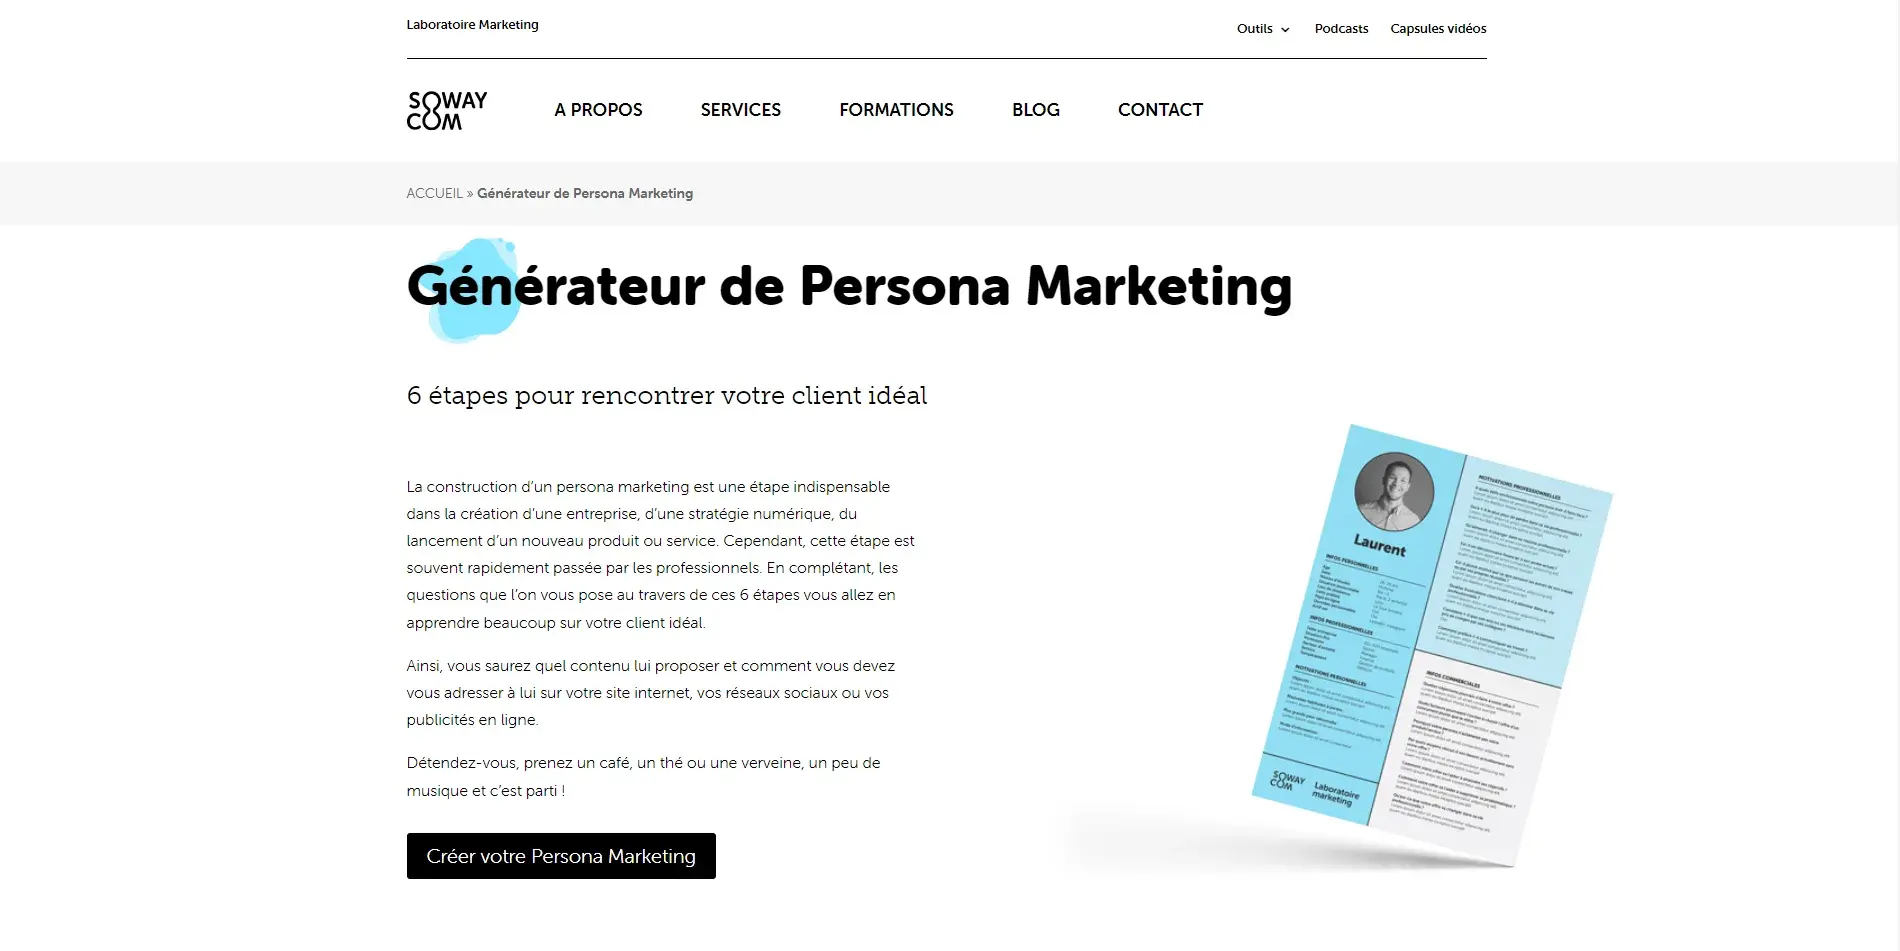 Blogduwebdesign outils marketing creation persona soway com